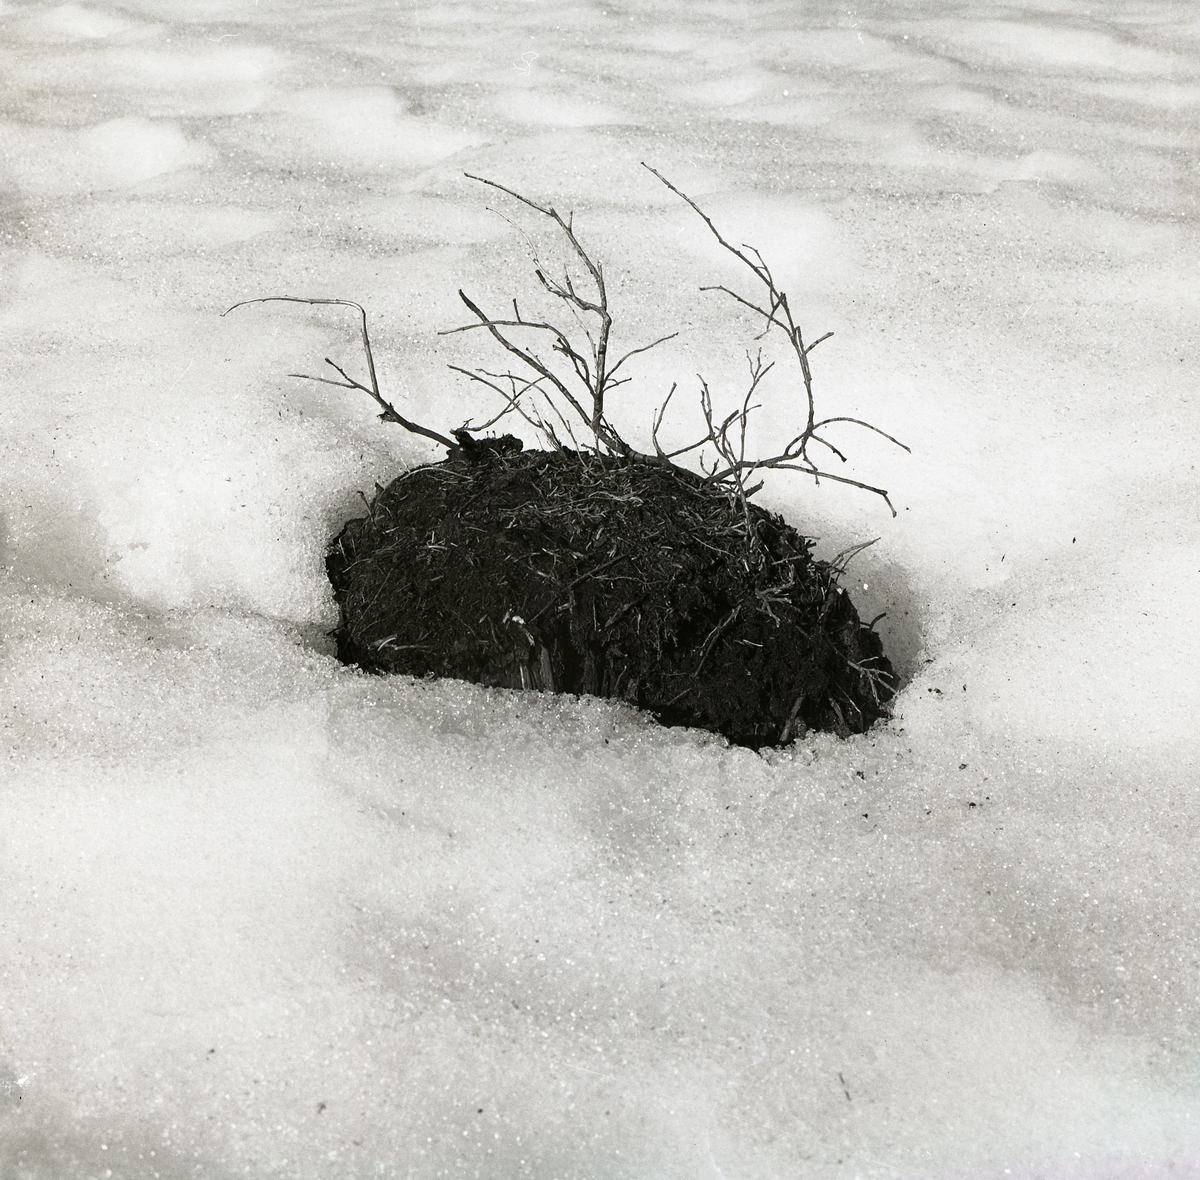 Tuva med liten buske sticker upp ur snön, 7 april 1979.